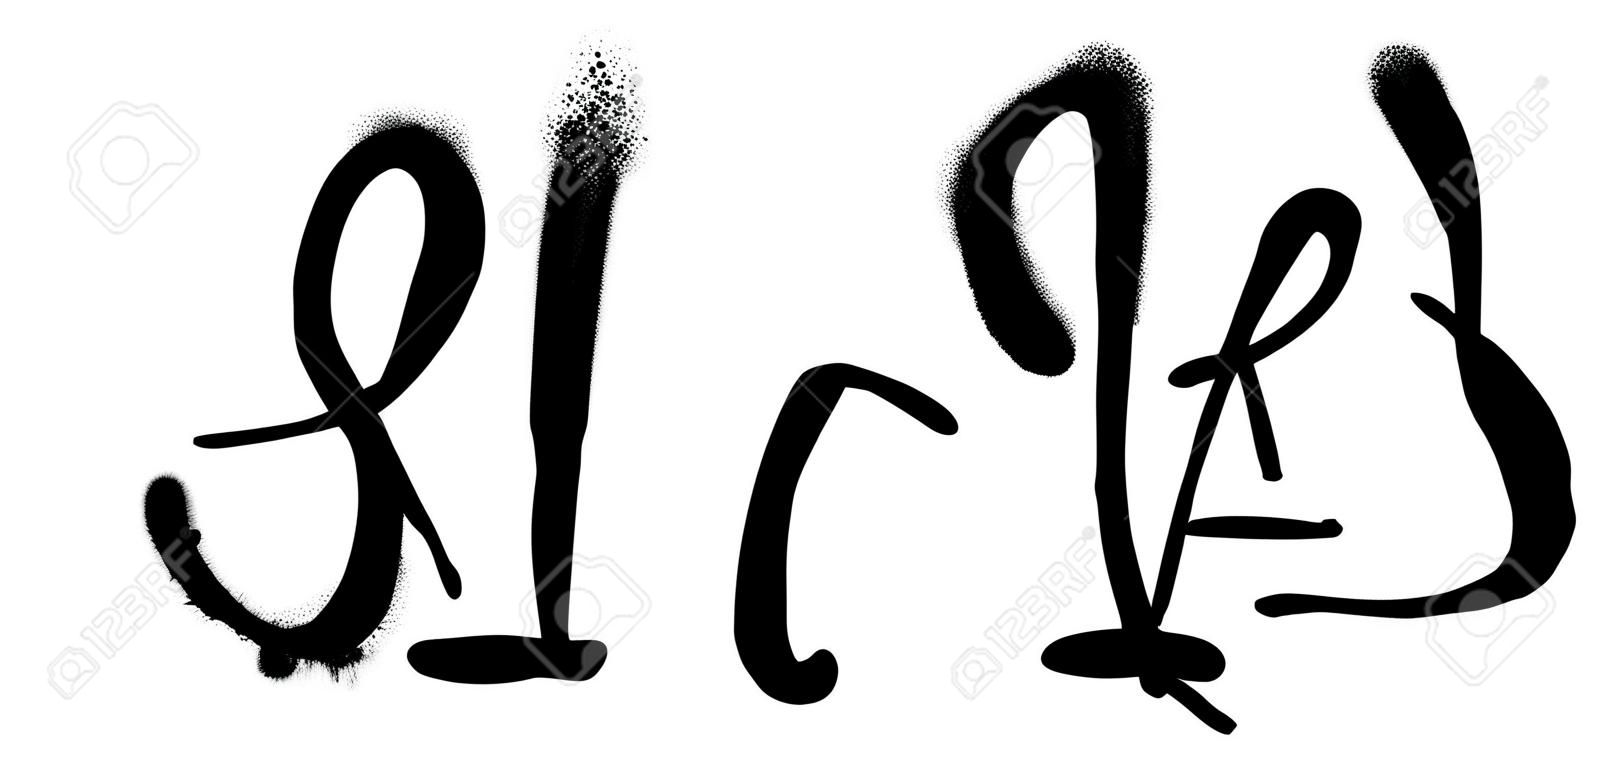 Graffiti de fuente de viaje rociado con exceso de rociado en negro sobre blanco. Ilustración vectorial